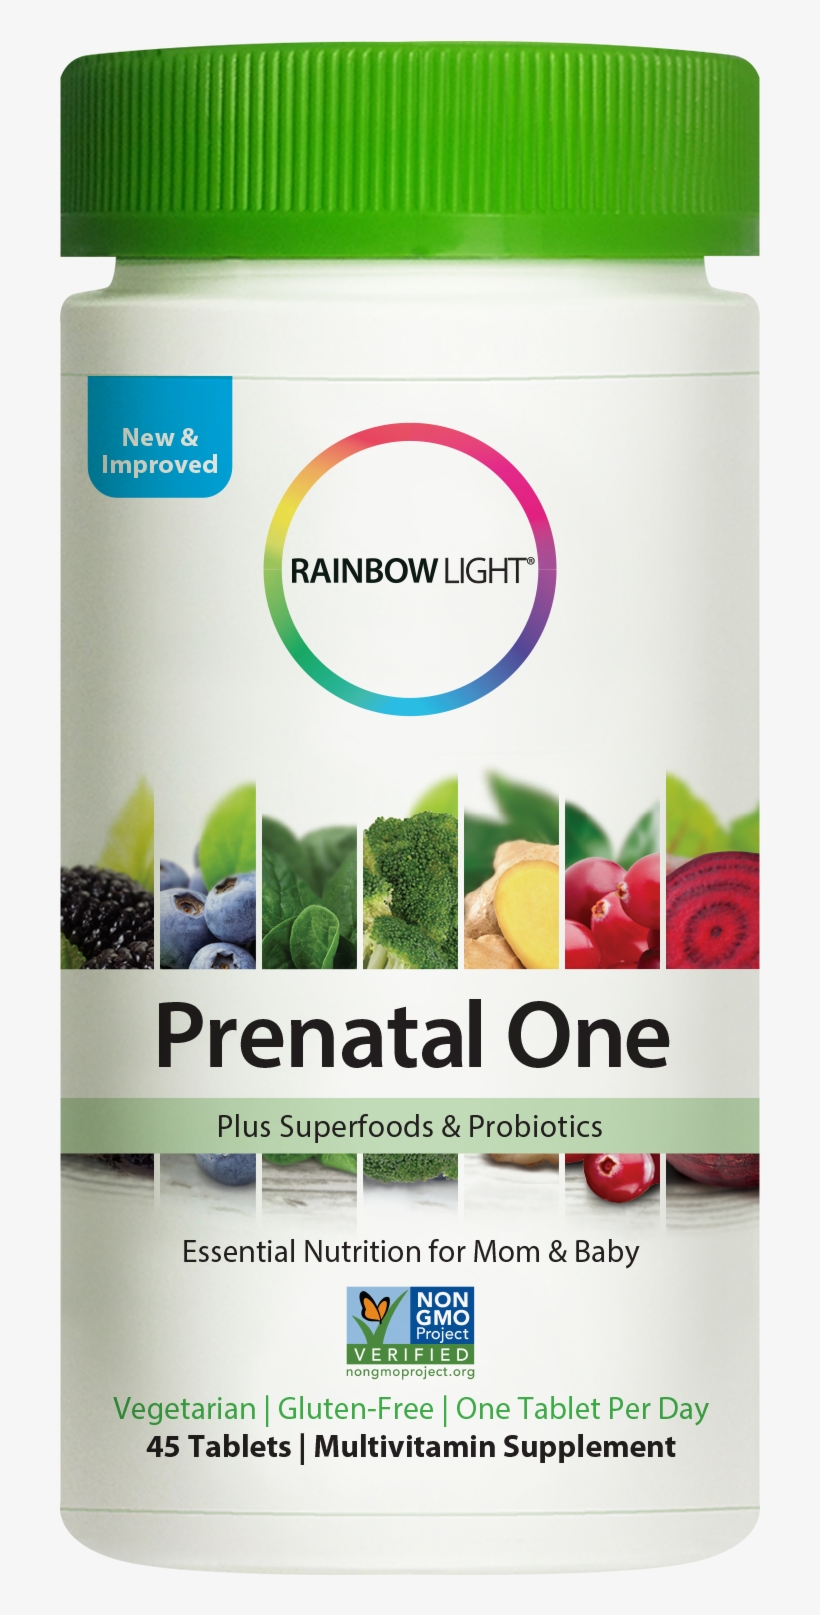 Rainbow Light Prenatal One Multivitamin Non-gmo Project - Rainbow Light Men's One Multivitamin, transparent png #7806275